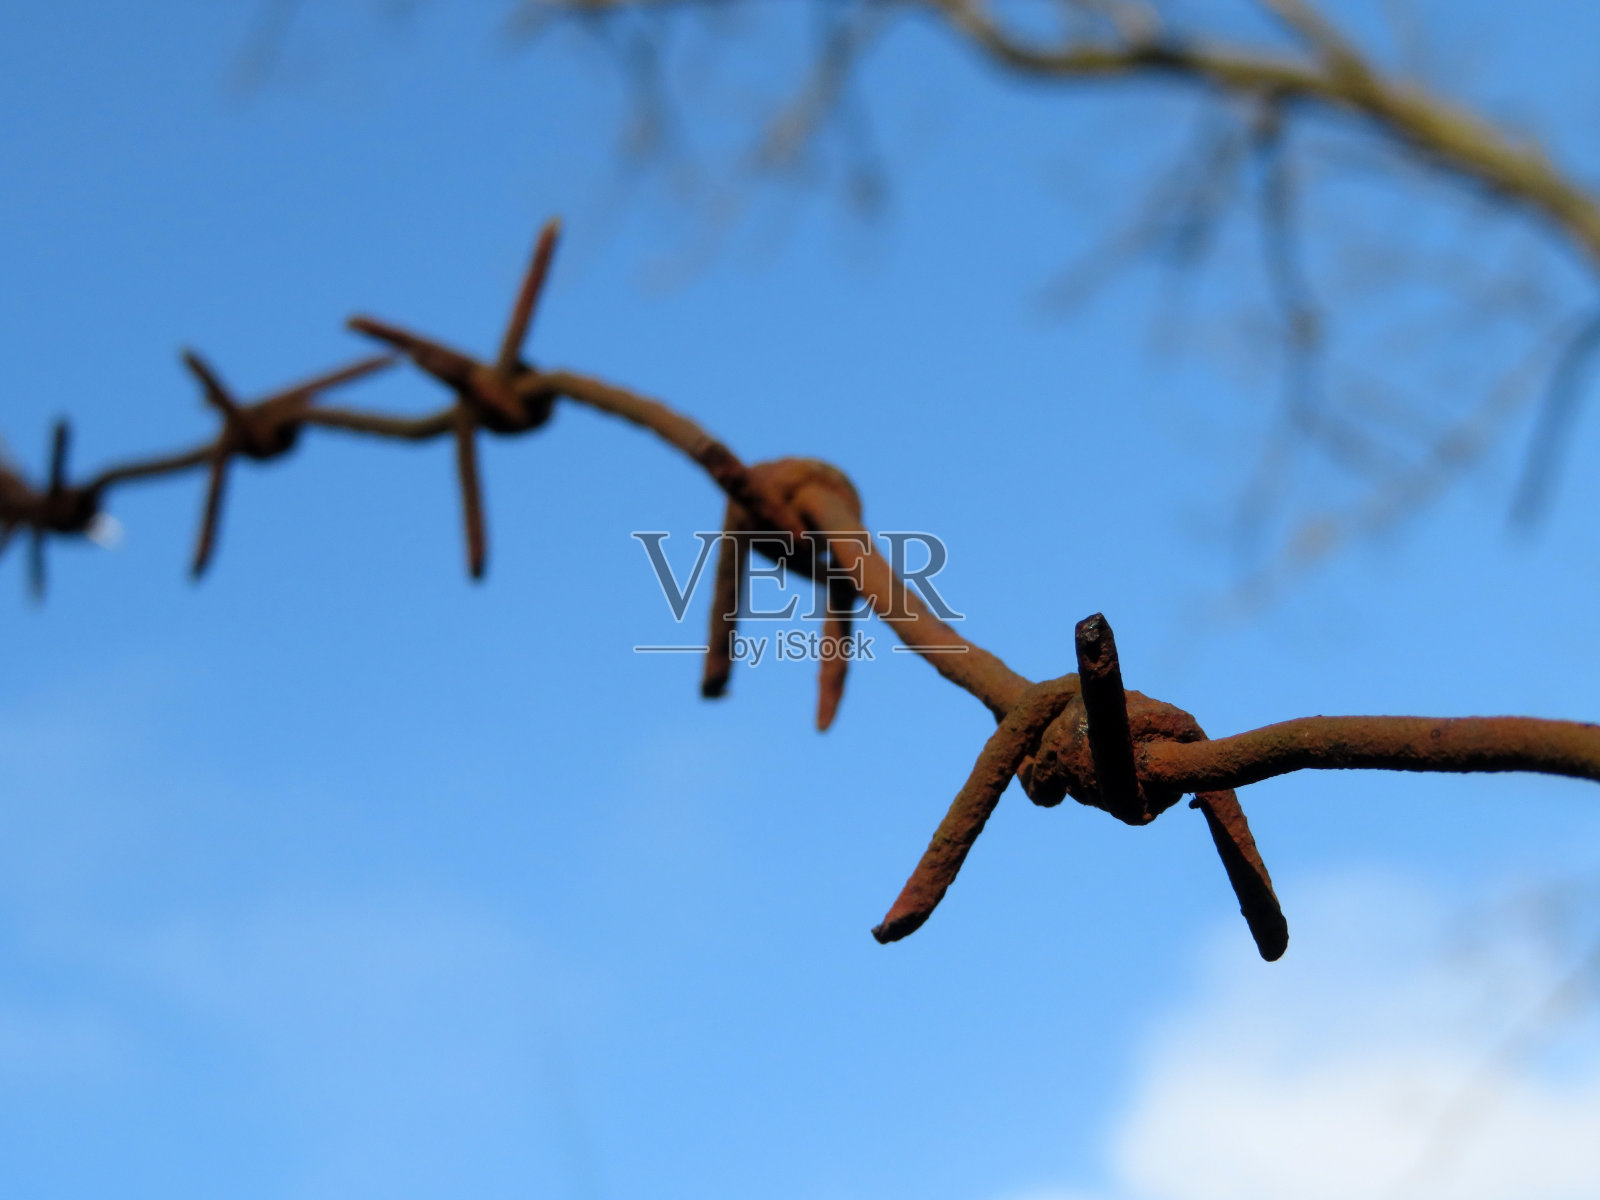 锈迹斑斑的铁丝网映衬着蓝天、白云和光秃秃的树枝照片摄影图片